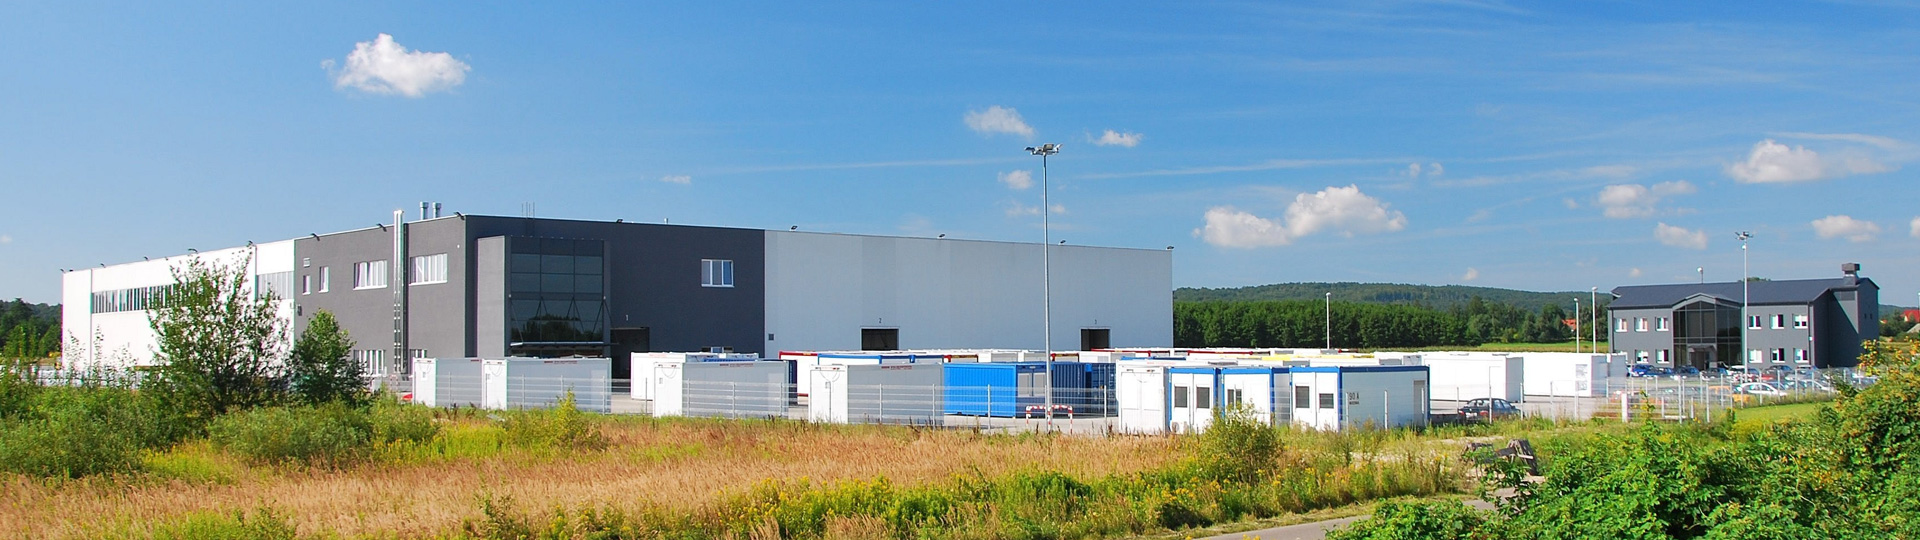 Lärmschutzwände Modulgebäude Container Verzinkerei Polen